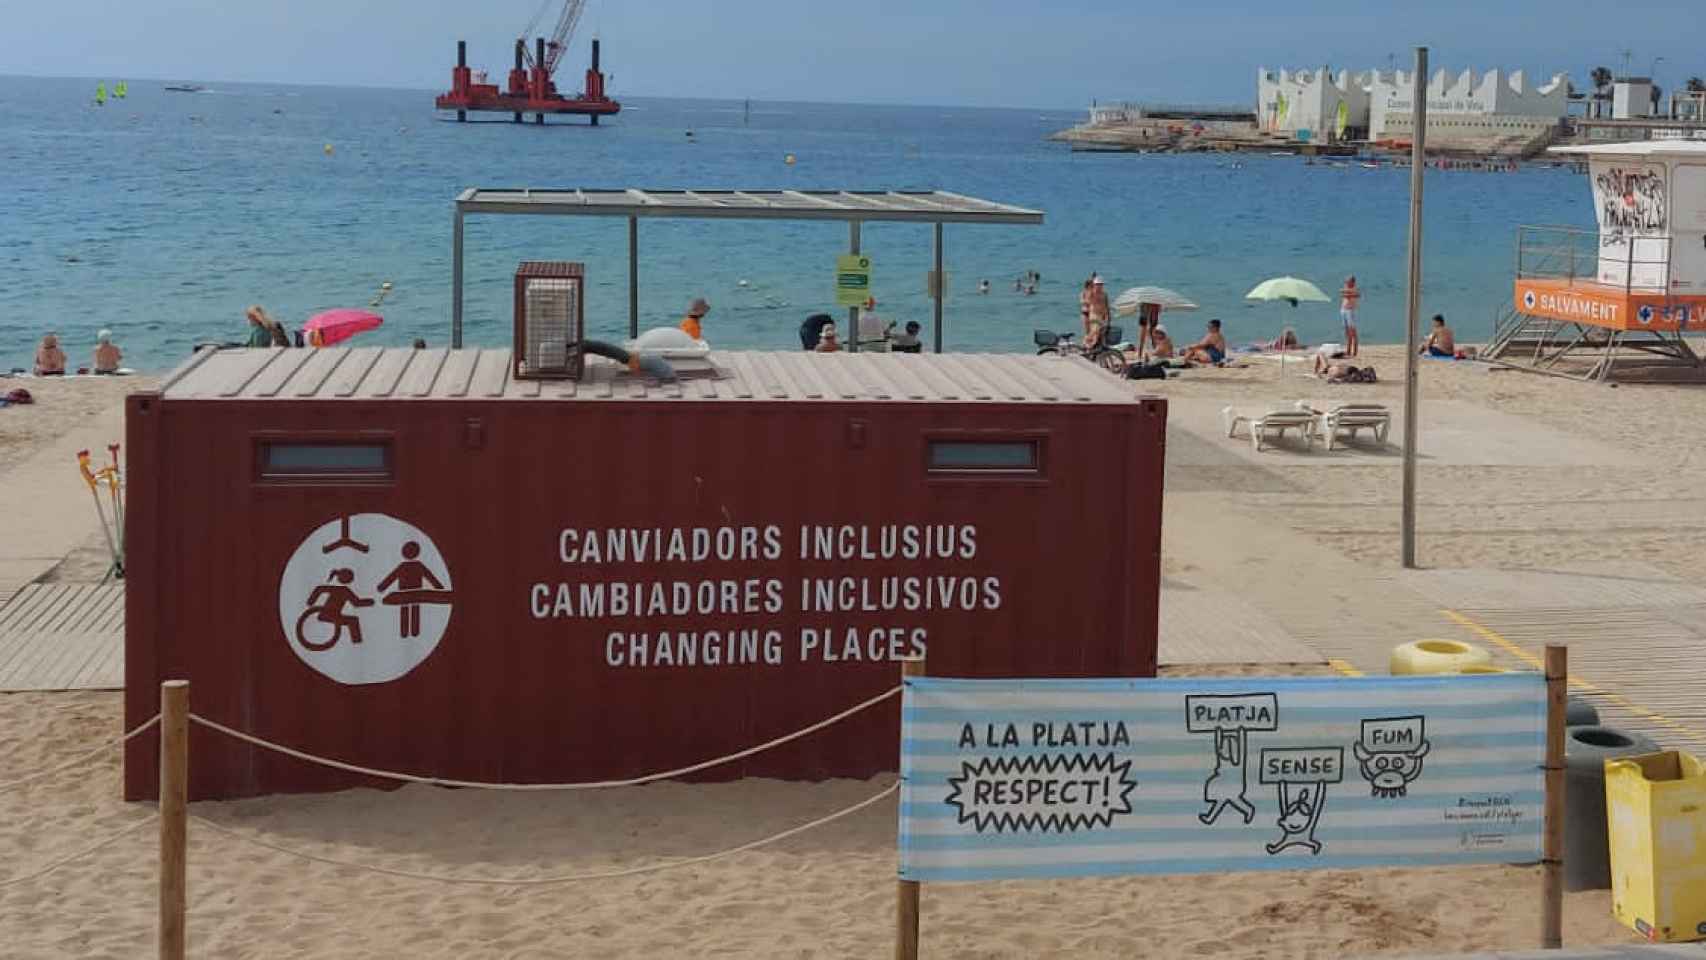 Las personas con discapacidad denuncian la falta de playas accesibles: “No somos apestados” / PLAYAS ACCESIBLES